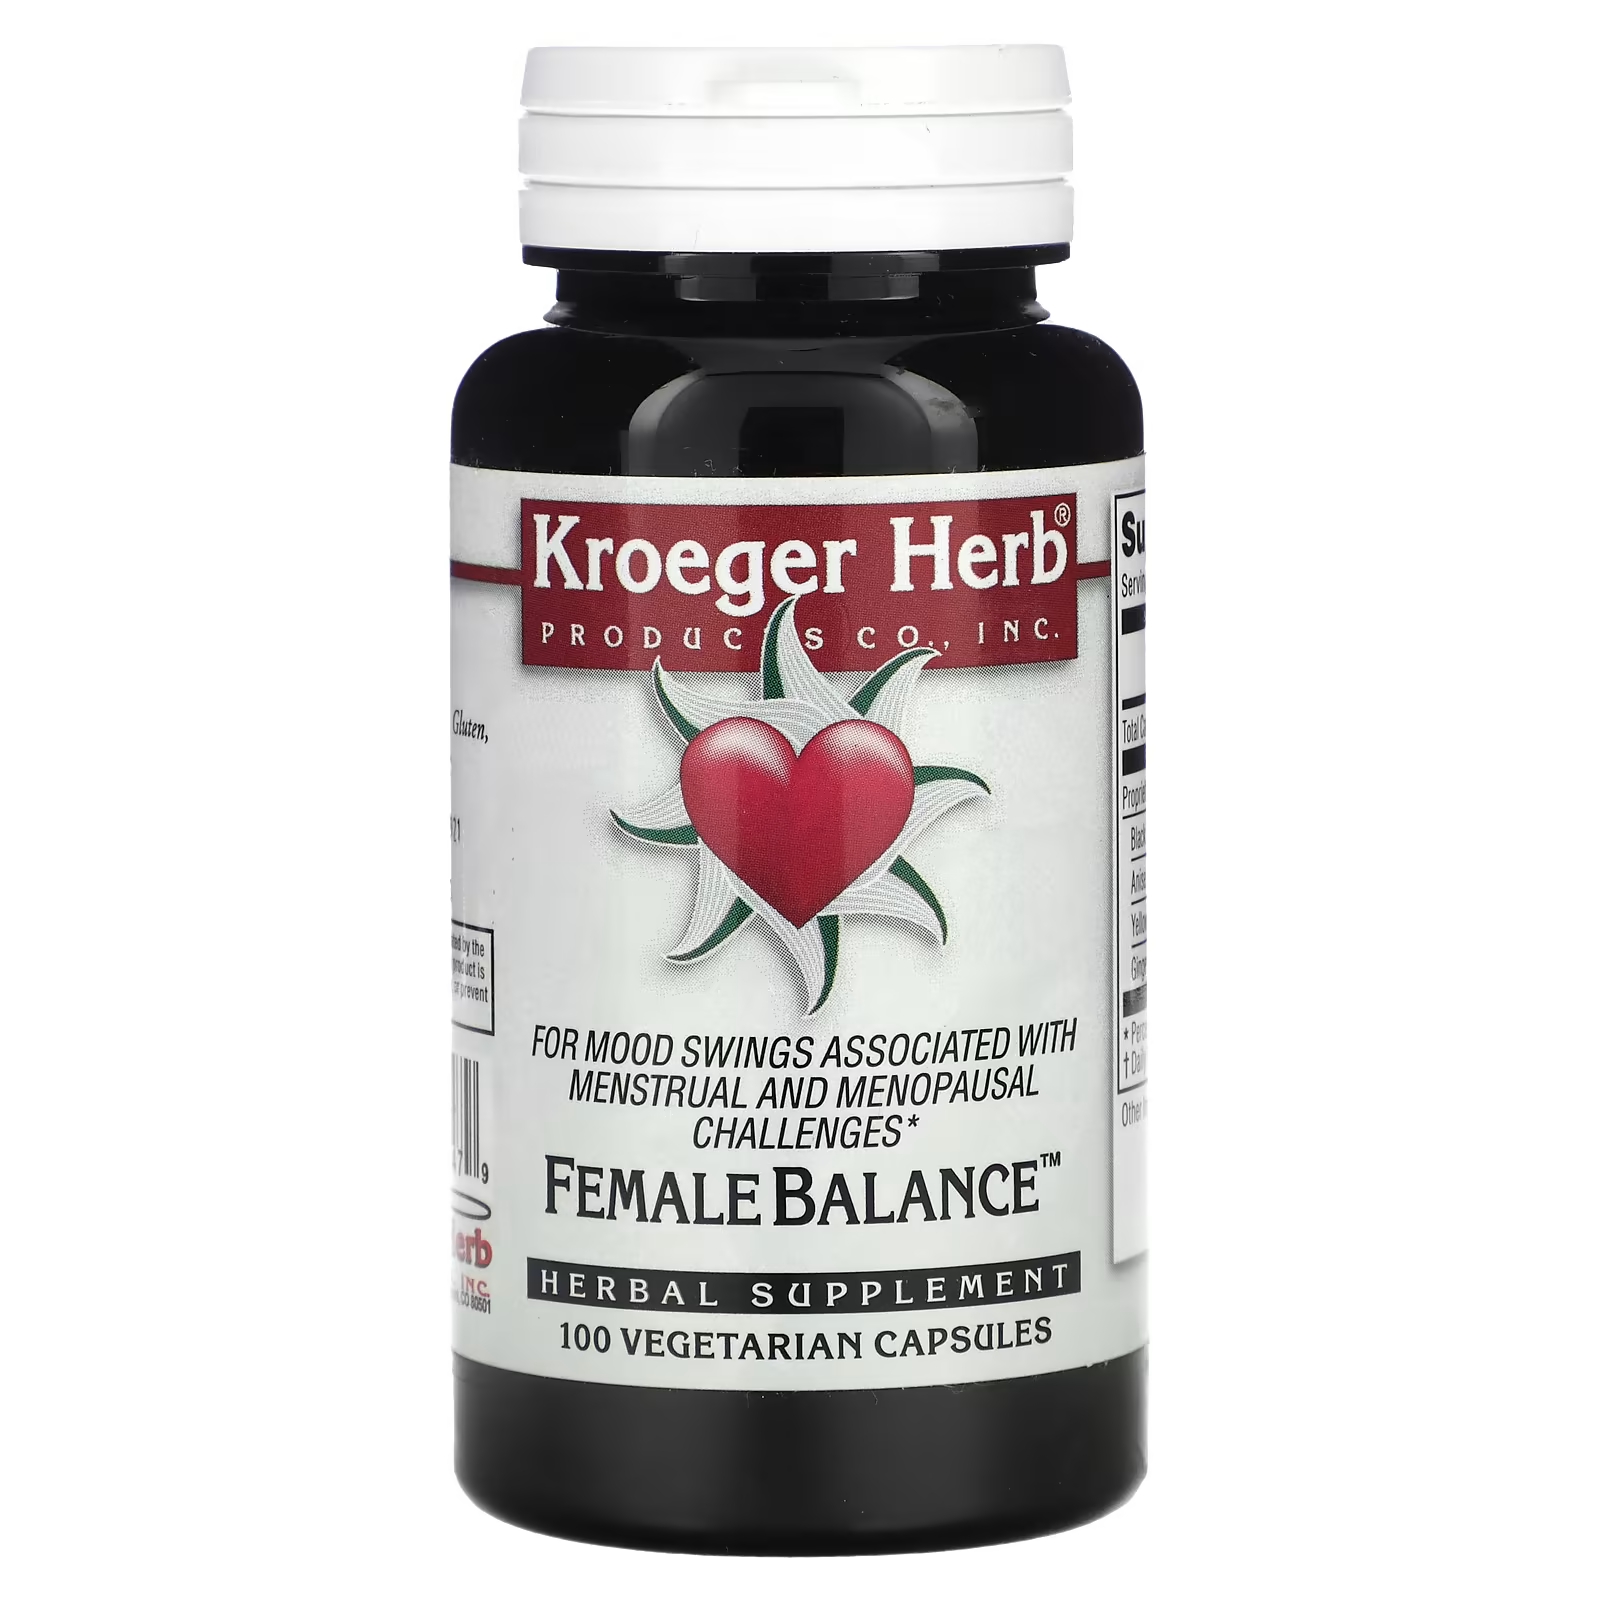 Растительная добавка Kroeger Herb Co женский баланс, 100 капсул растительная добавка kroeger herb co fng care 100 капсул